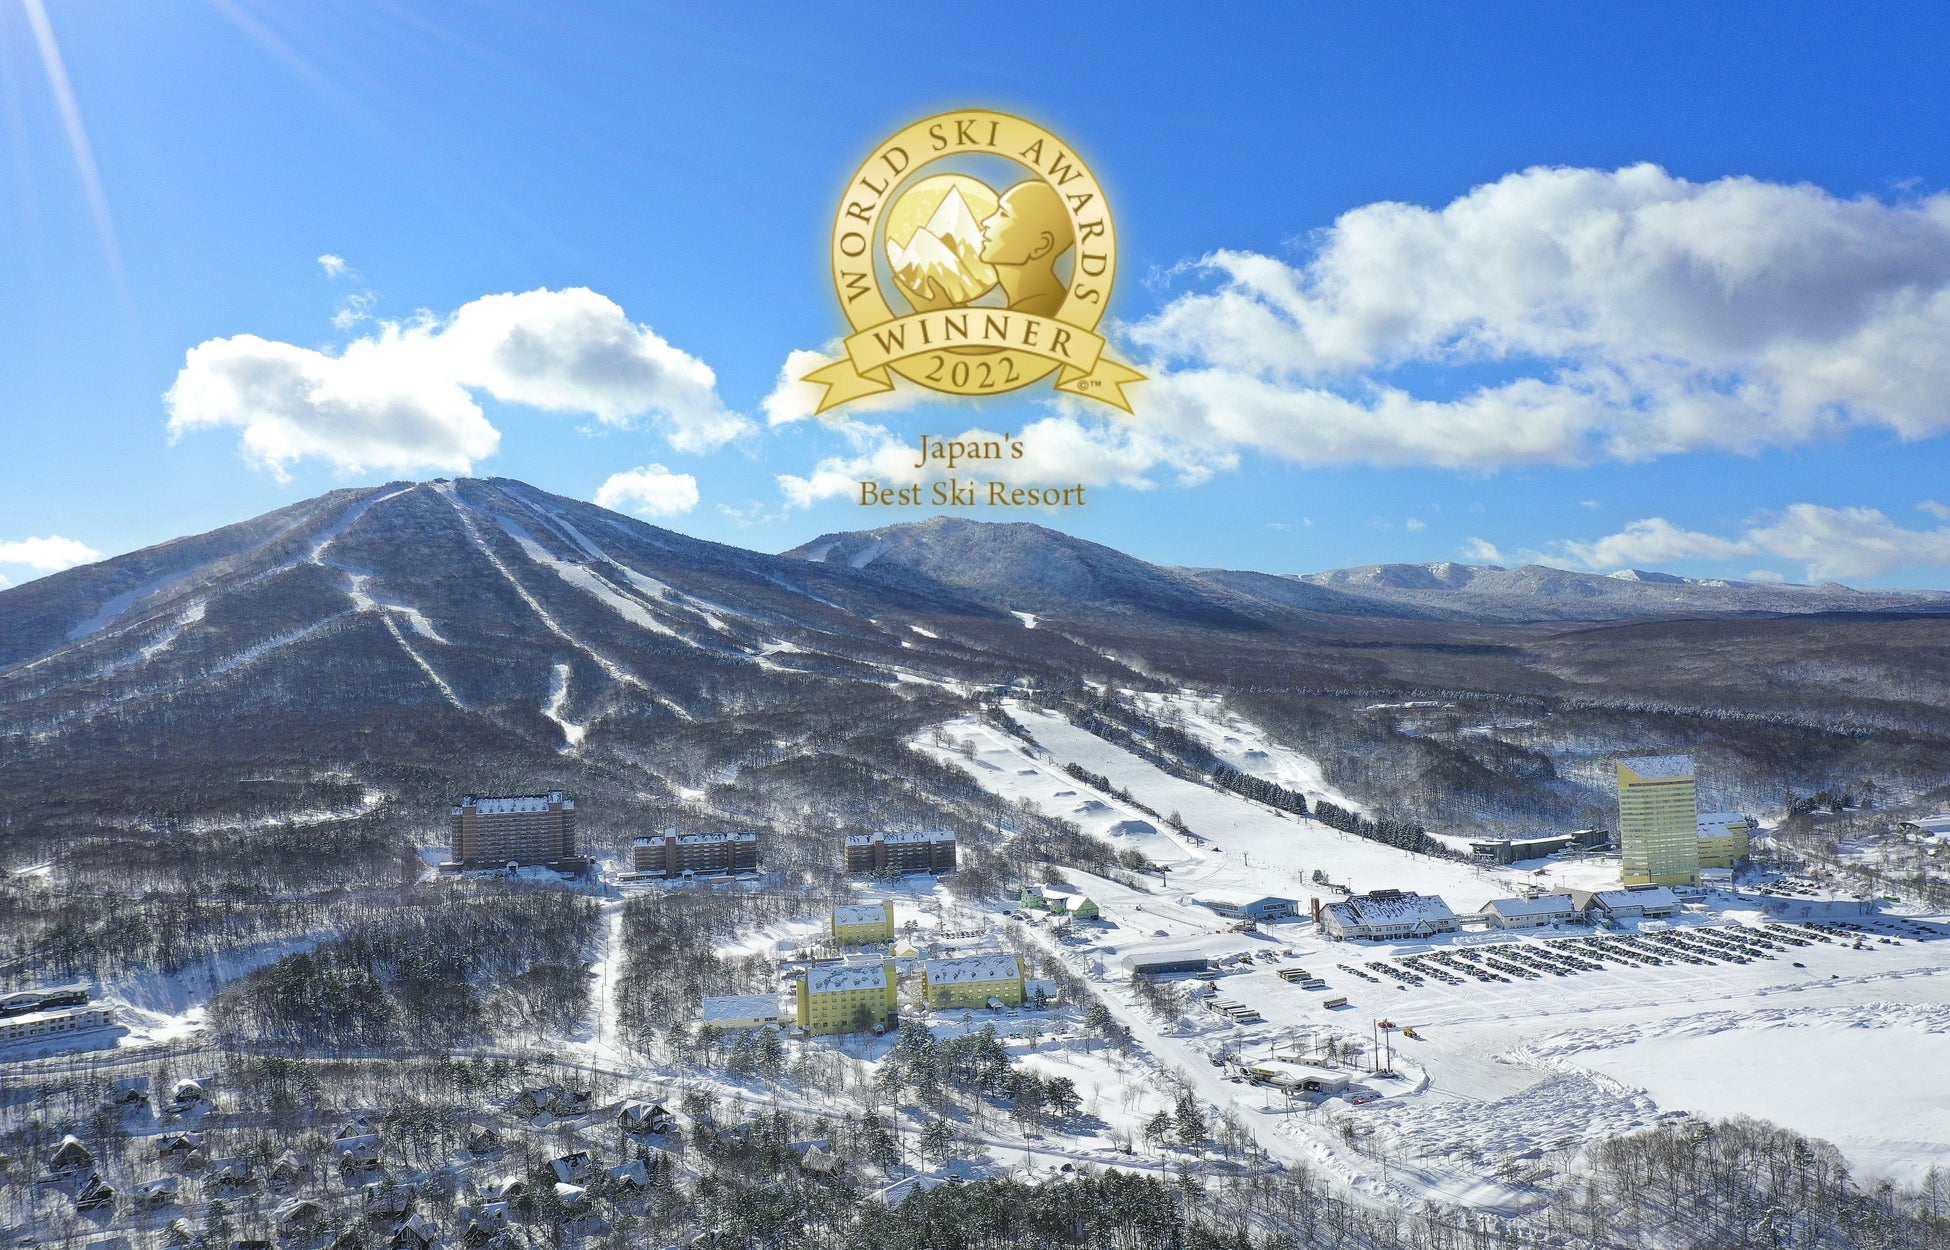 安比高原スキー場「WORLD SKI AWARDS 2022」にて、「Japan’s Best Ski Resort」最優秀賞を受賞！